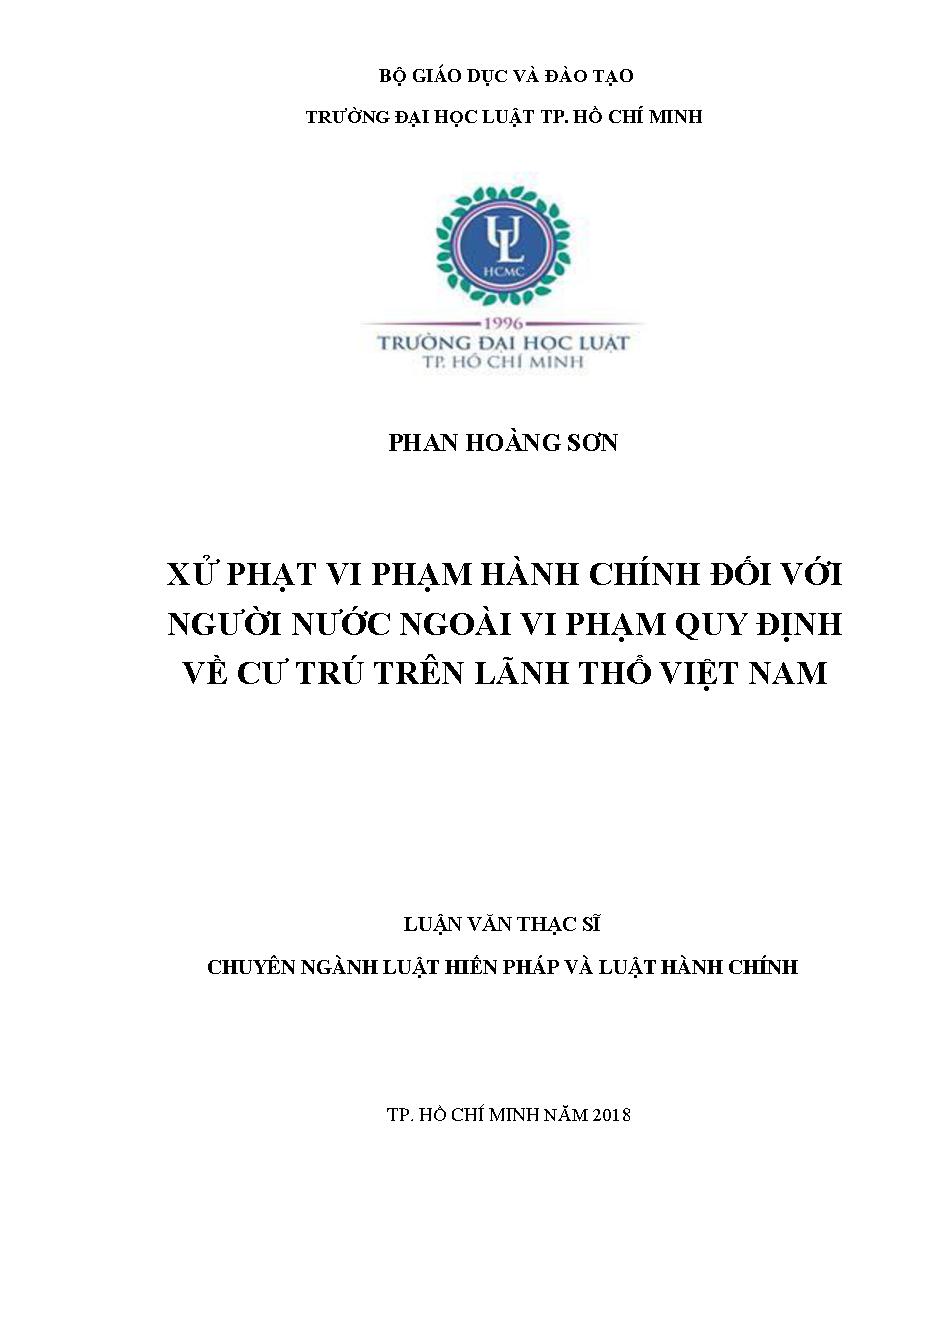 Xử phạt vi phạm hành chính đối với người nước ngoài vi phạm quy định về cư trú trên lãnh thổ Việt Nam